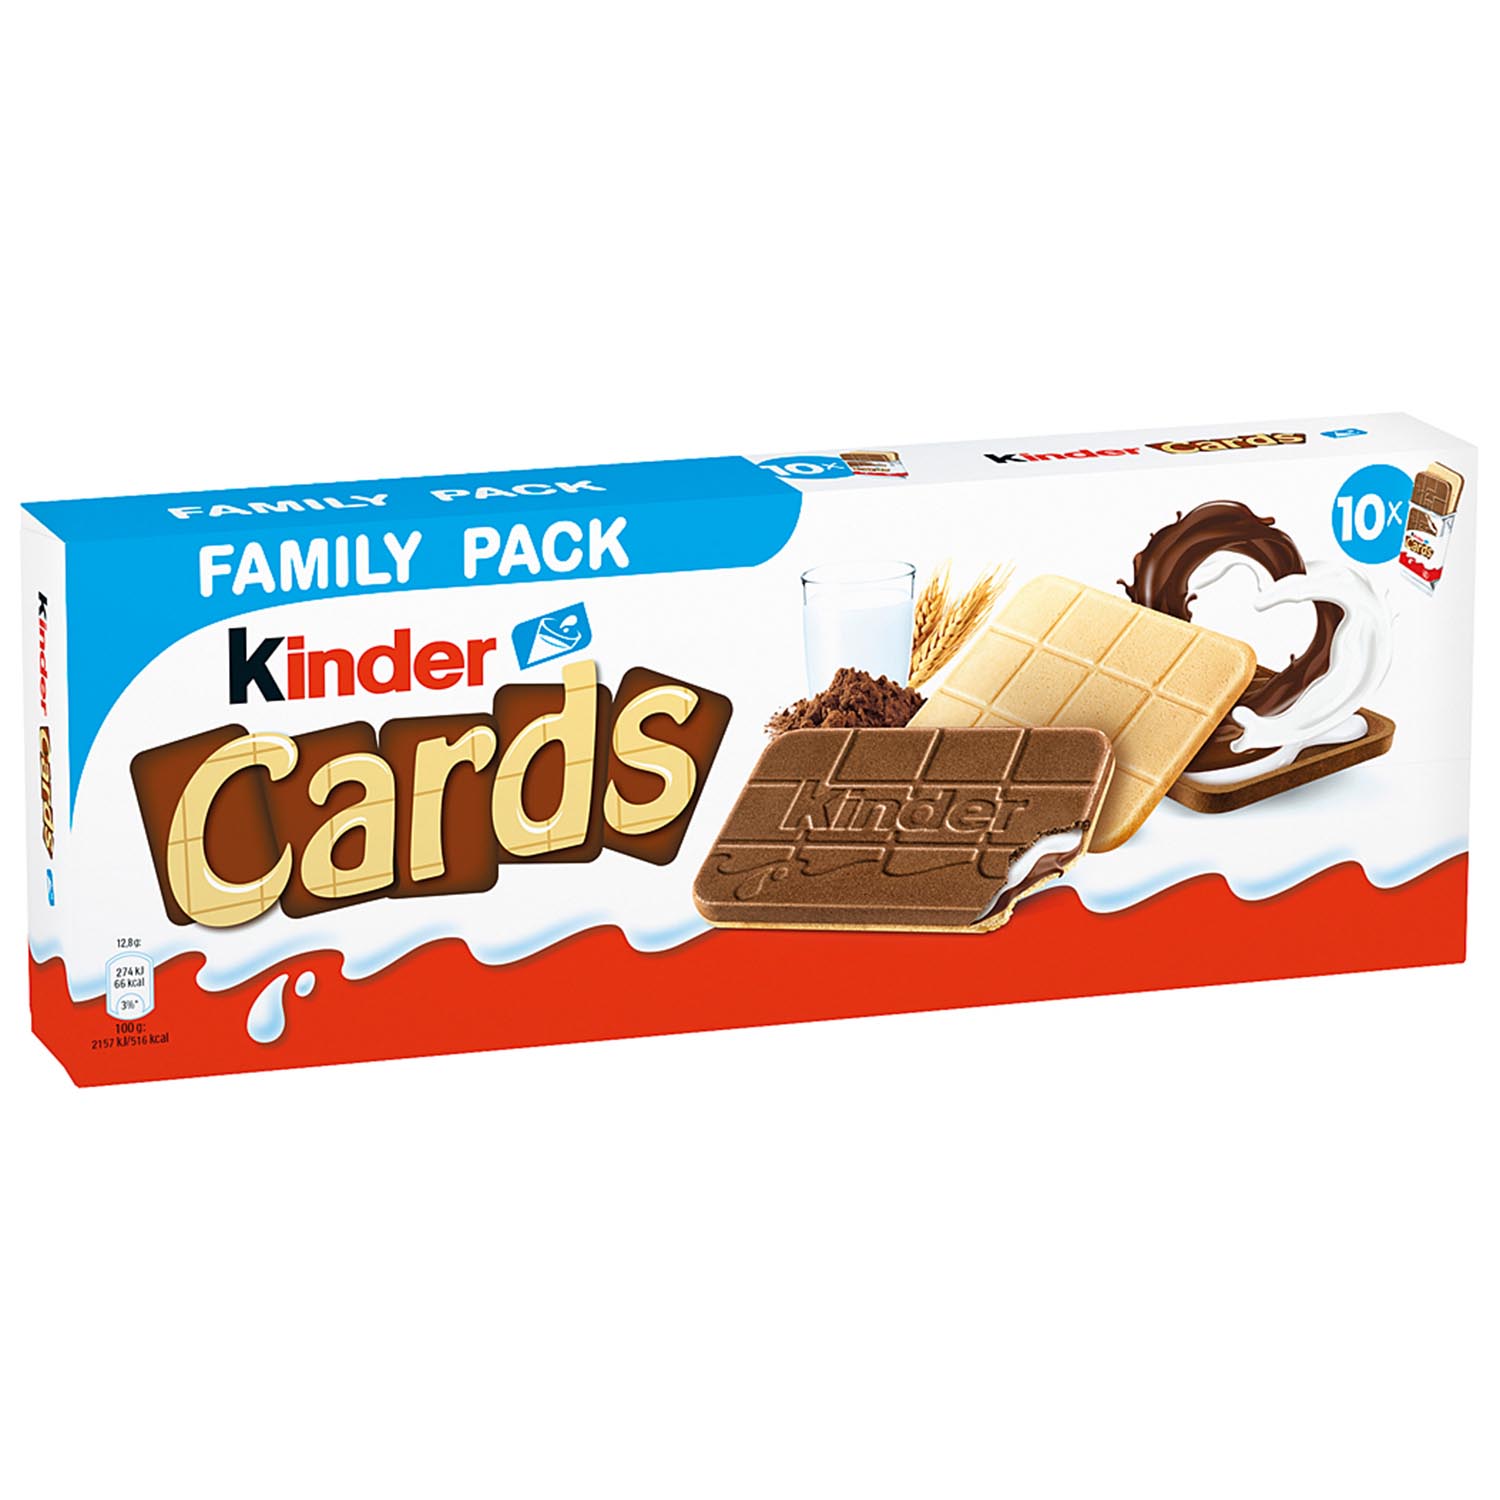 Kinder Cards Family Pack 10ks,256g